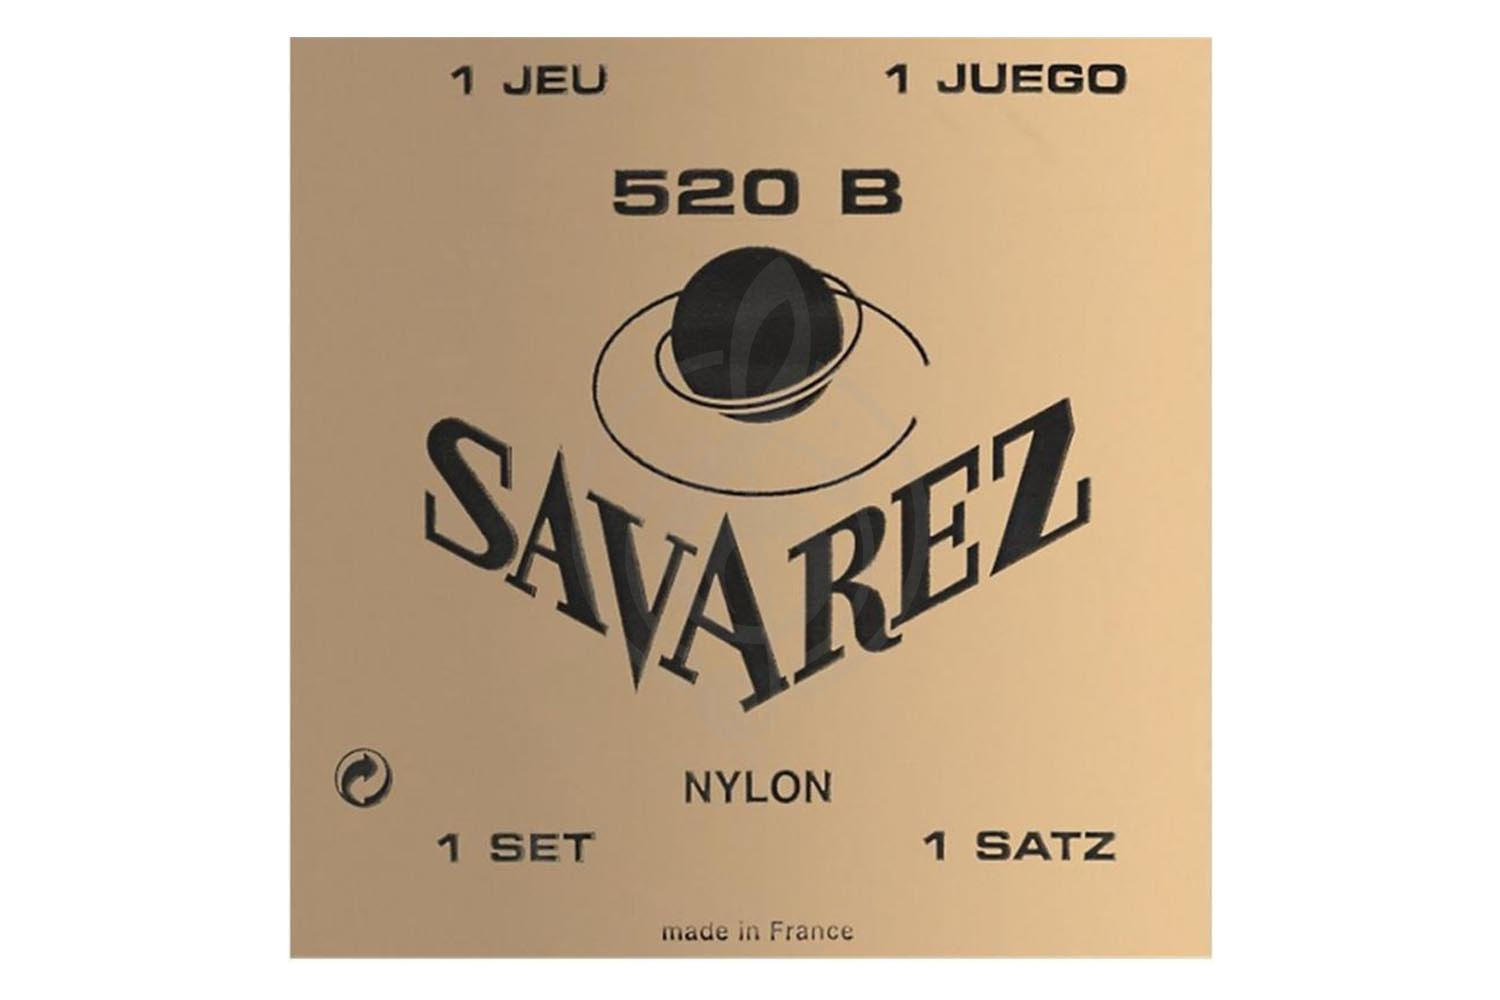 Струны для классической гитары Струны для классических гитар Savarez Savarez 520 B Traditional White low tension - Струныдля классической гитары 520 B - фото 1